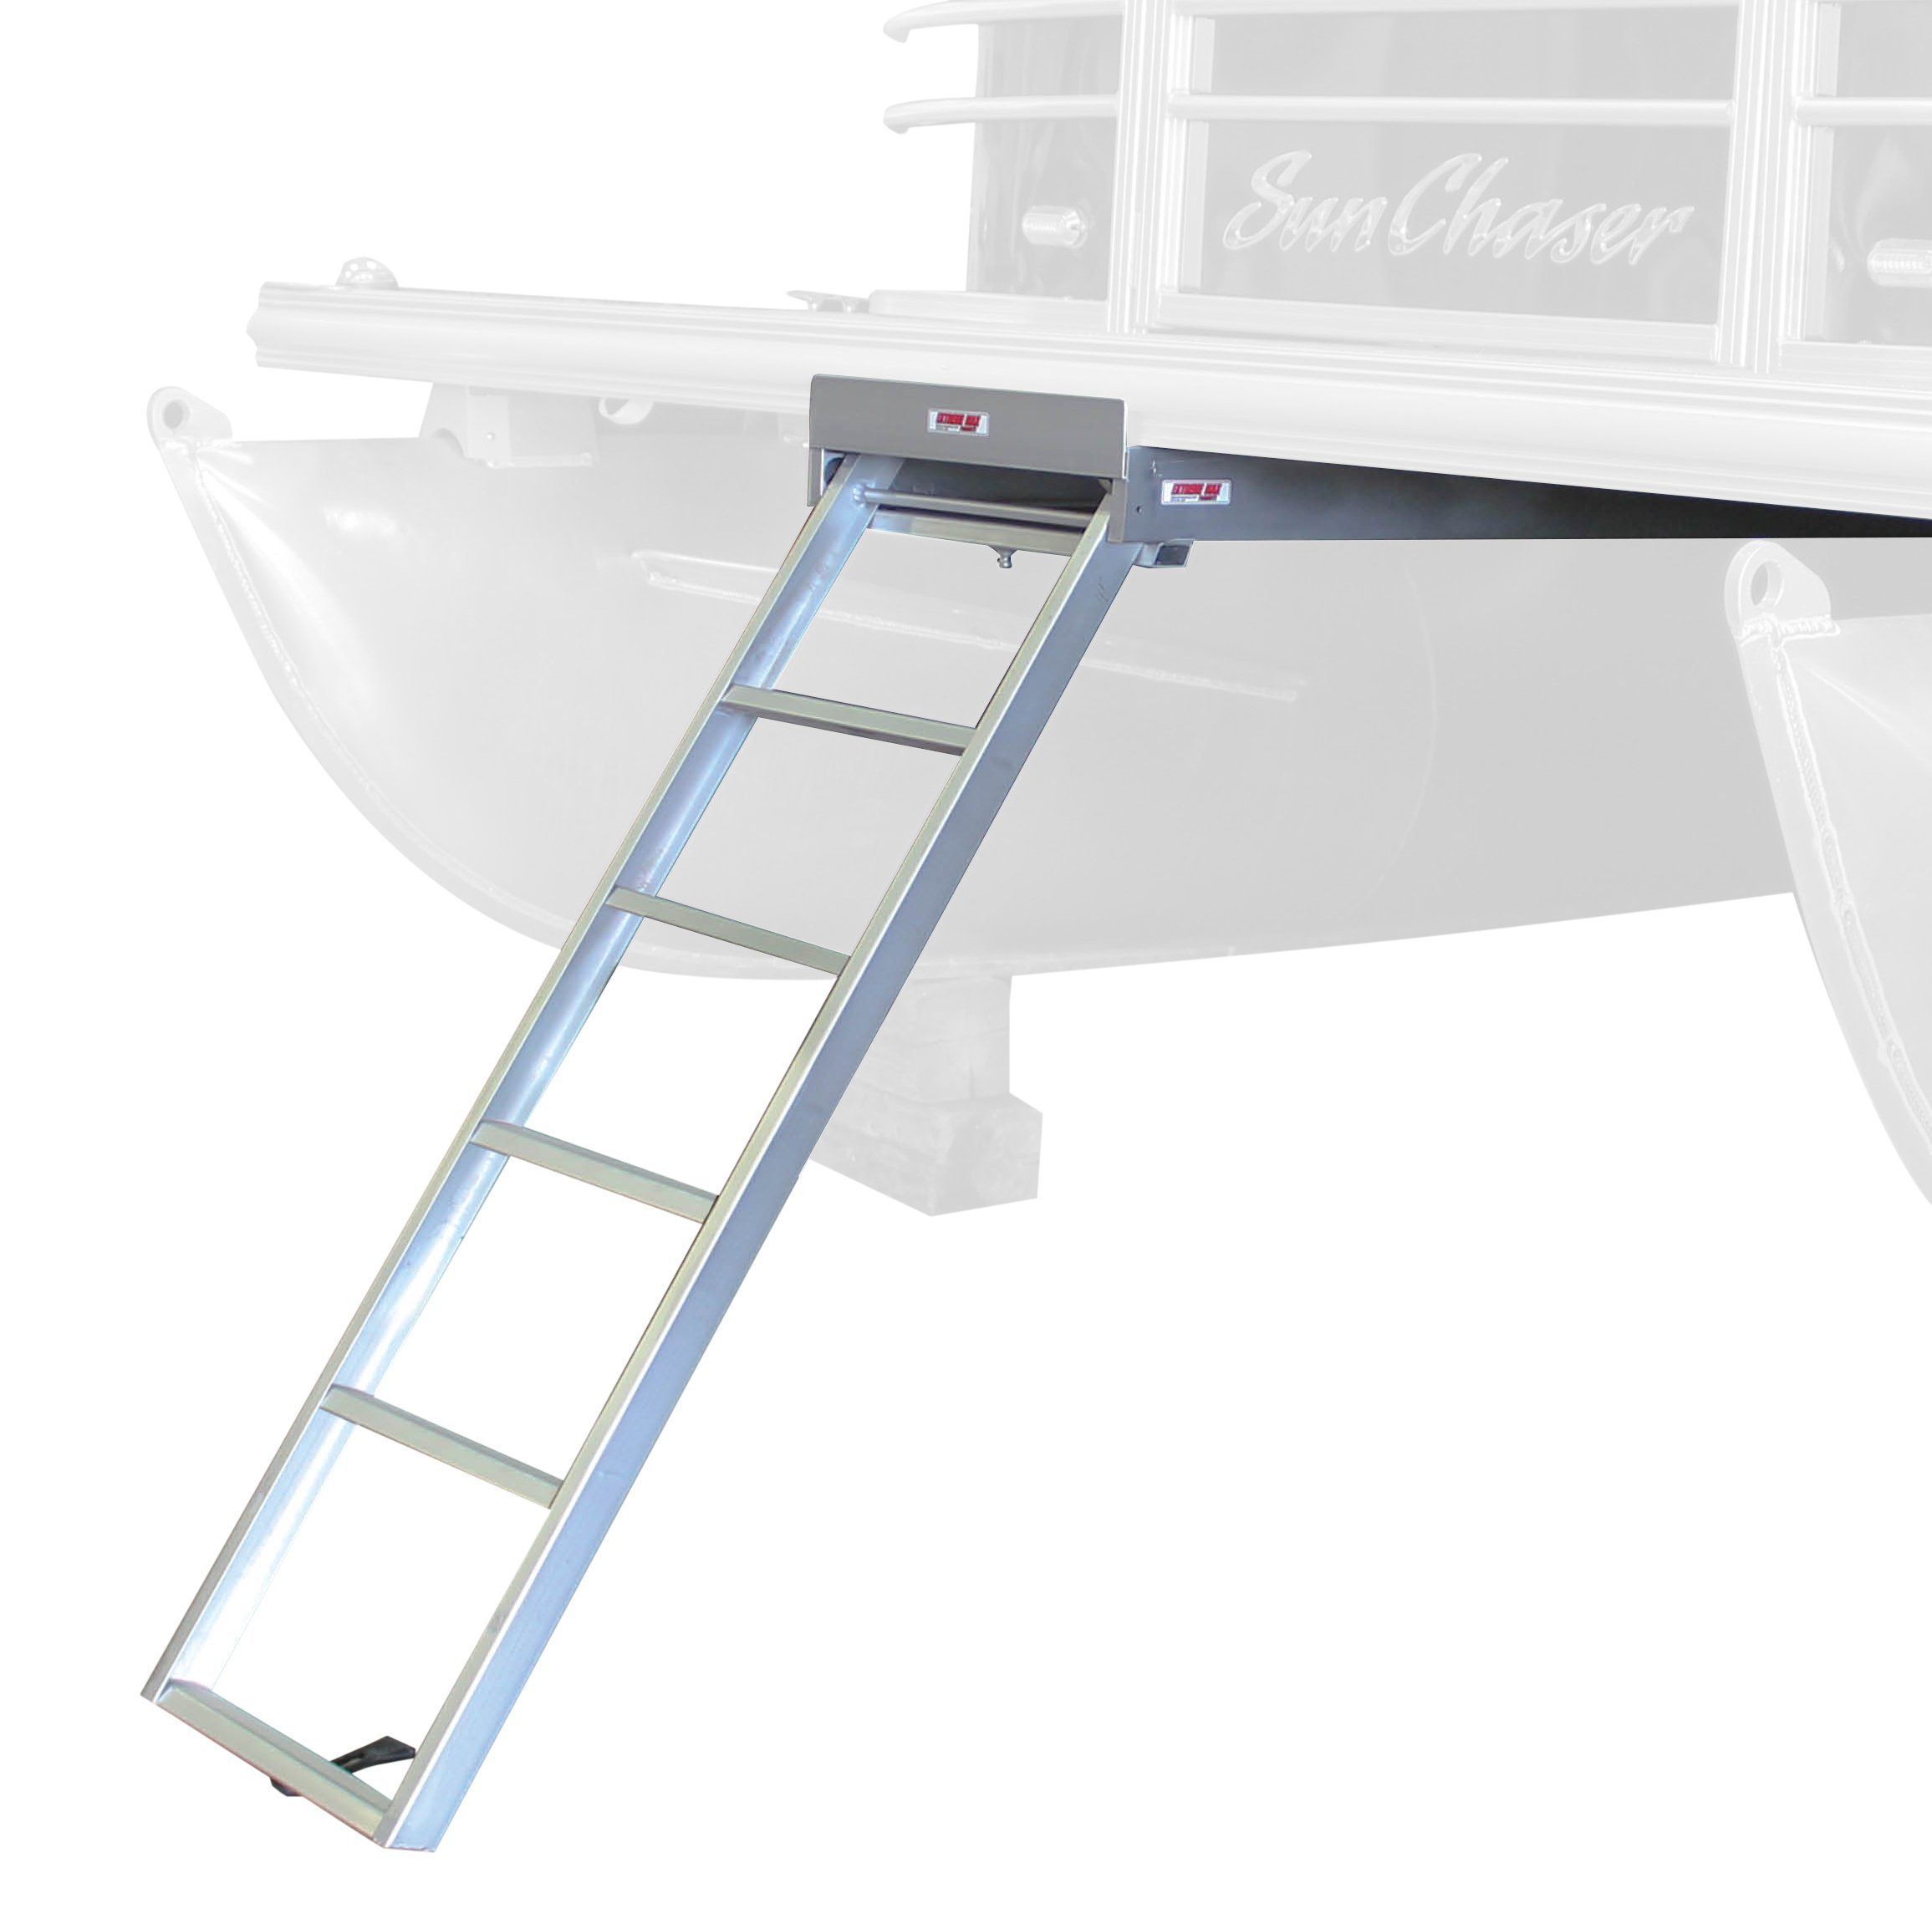 ZD reccomend Garelick swinger pontoon ladder